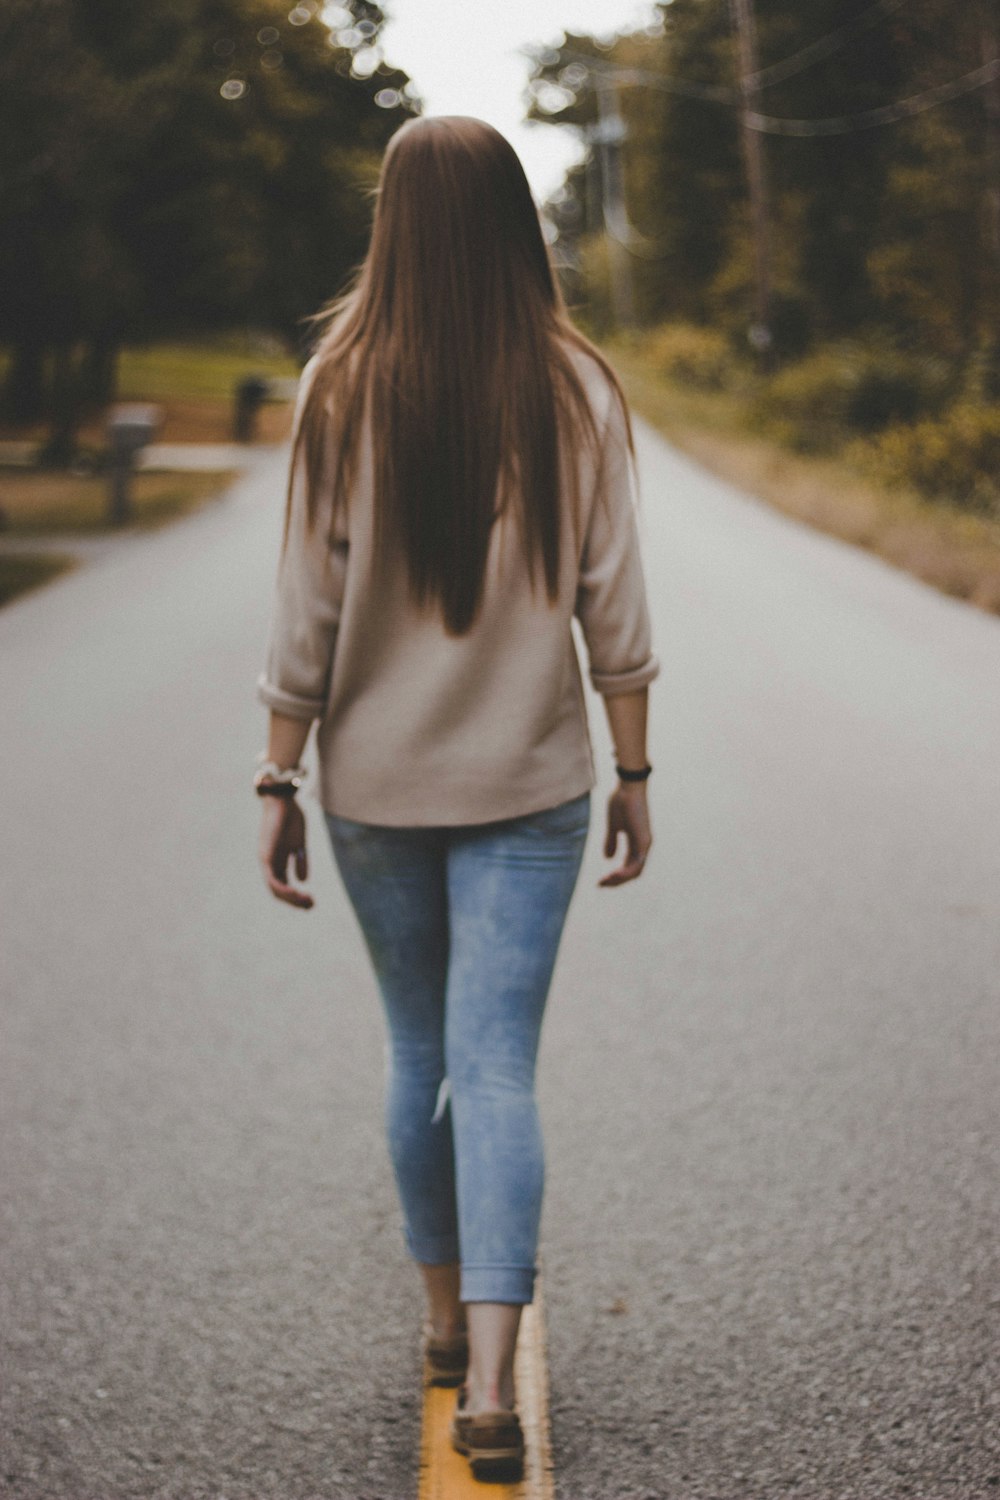 Frau in grauem Hemd und blauer Jeanshose, die tagsüber auf der Straße spazieren geht